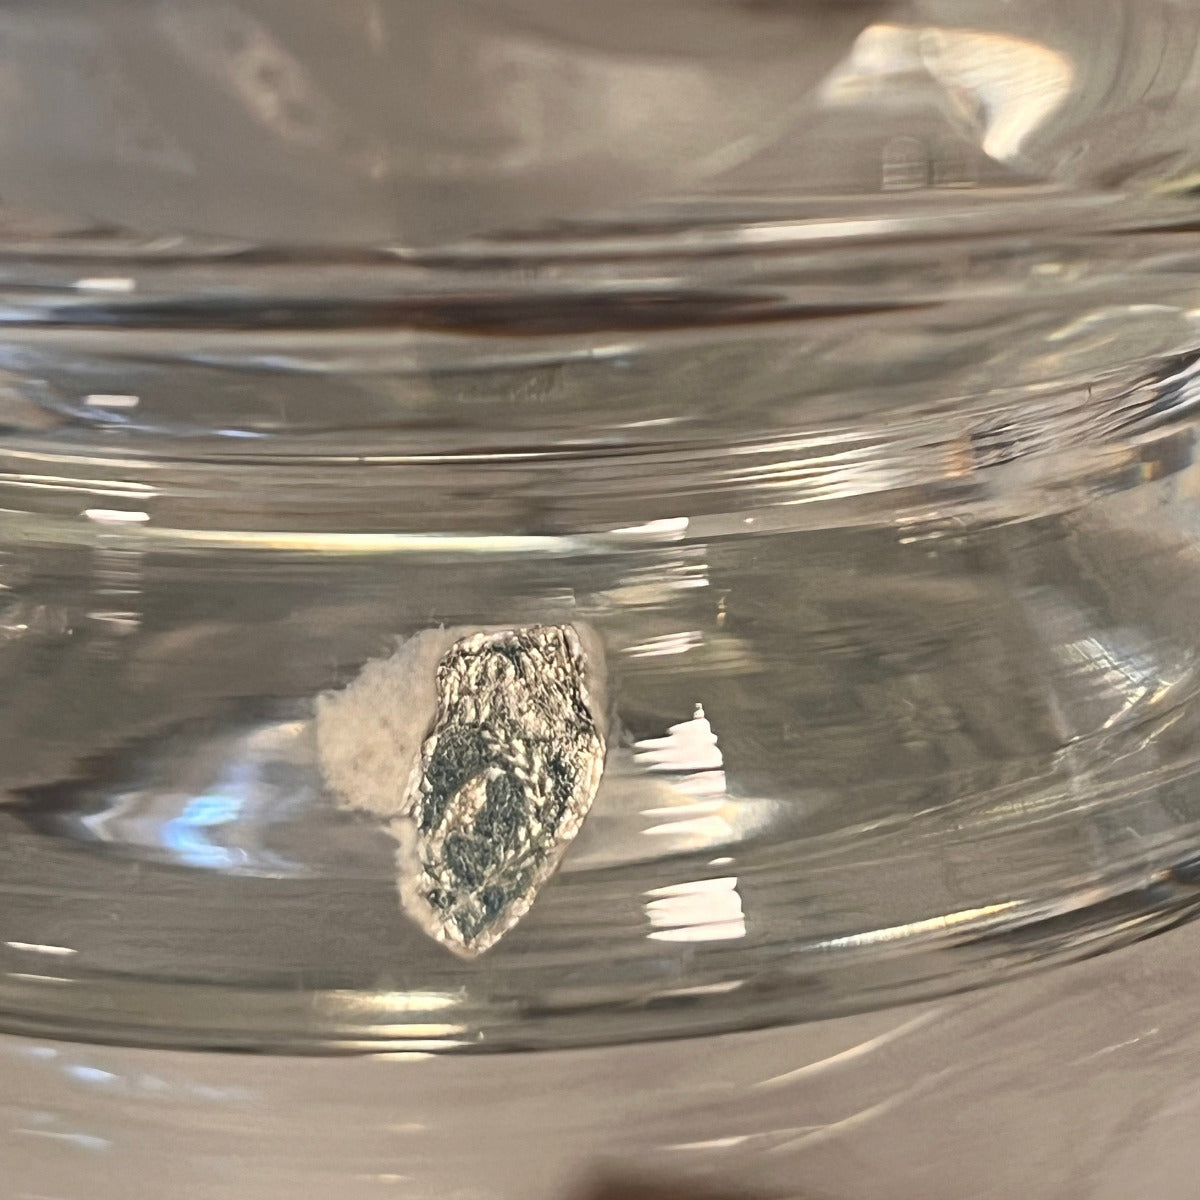 Kristallskålen har ett nästan borttaget märke men går att tyda till att vara ett tidigt Orrefors märke. Skålen är i fint skick utan rispor. 